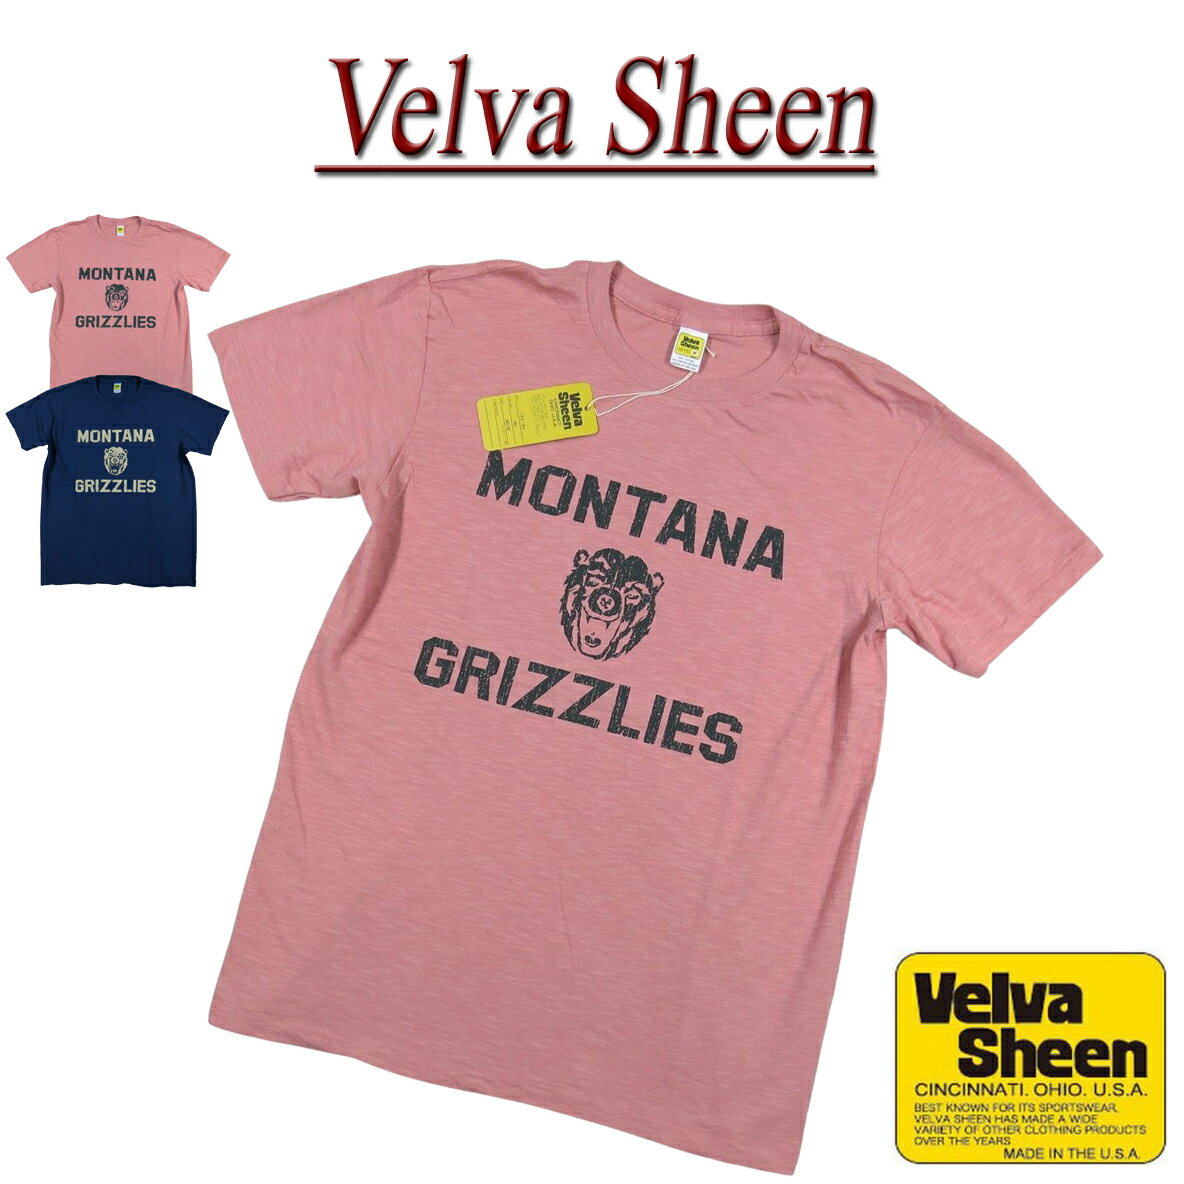 【2色4サイズ】 je311 新品 Velva Sheen USA製 MONTANA GRIZZLIES TEE 半袖 スラブ Tシャツ 162184 メンズ ベルバシーン ティーシャツ イエローレーベル Made in USA 【smtb-kd】